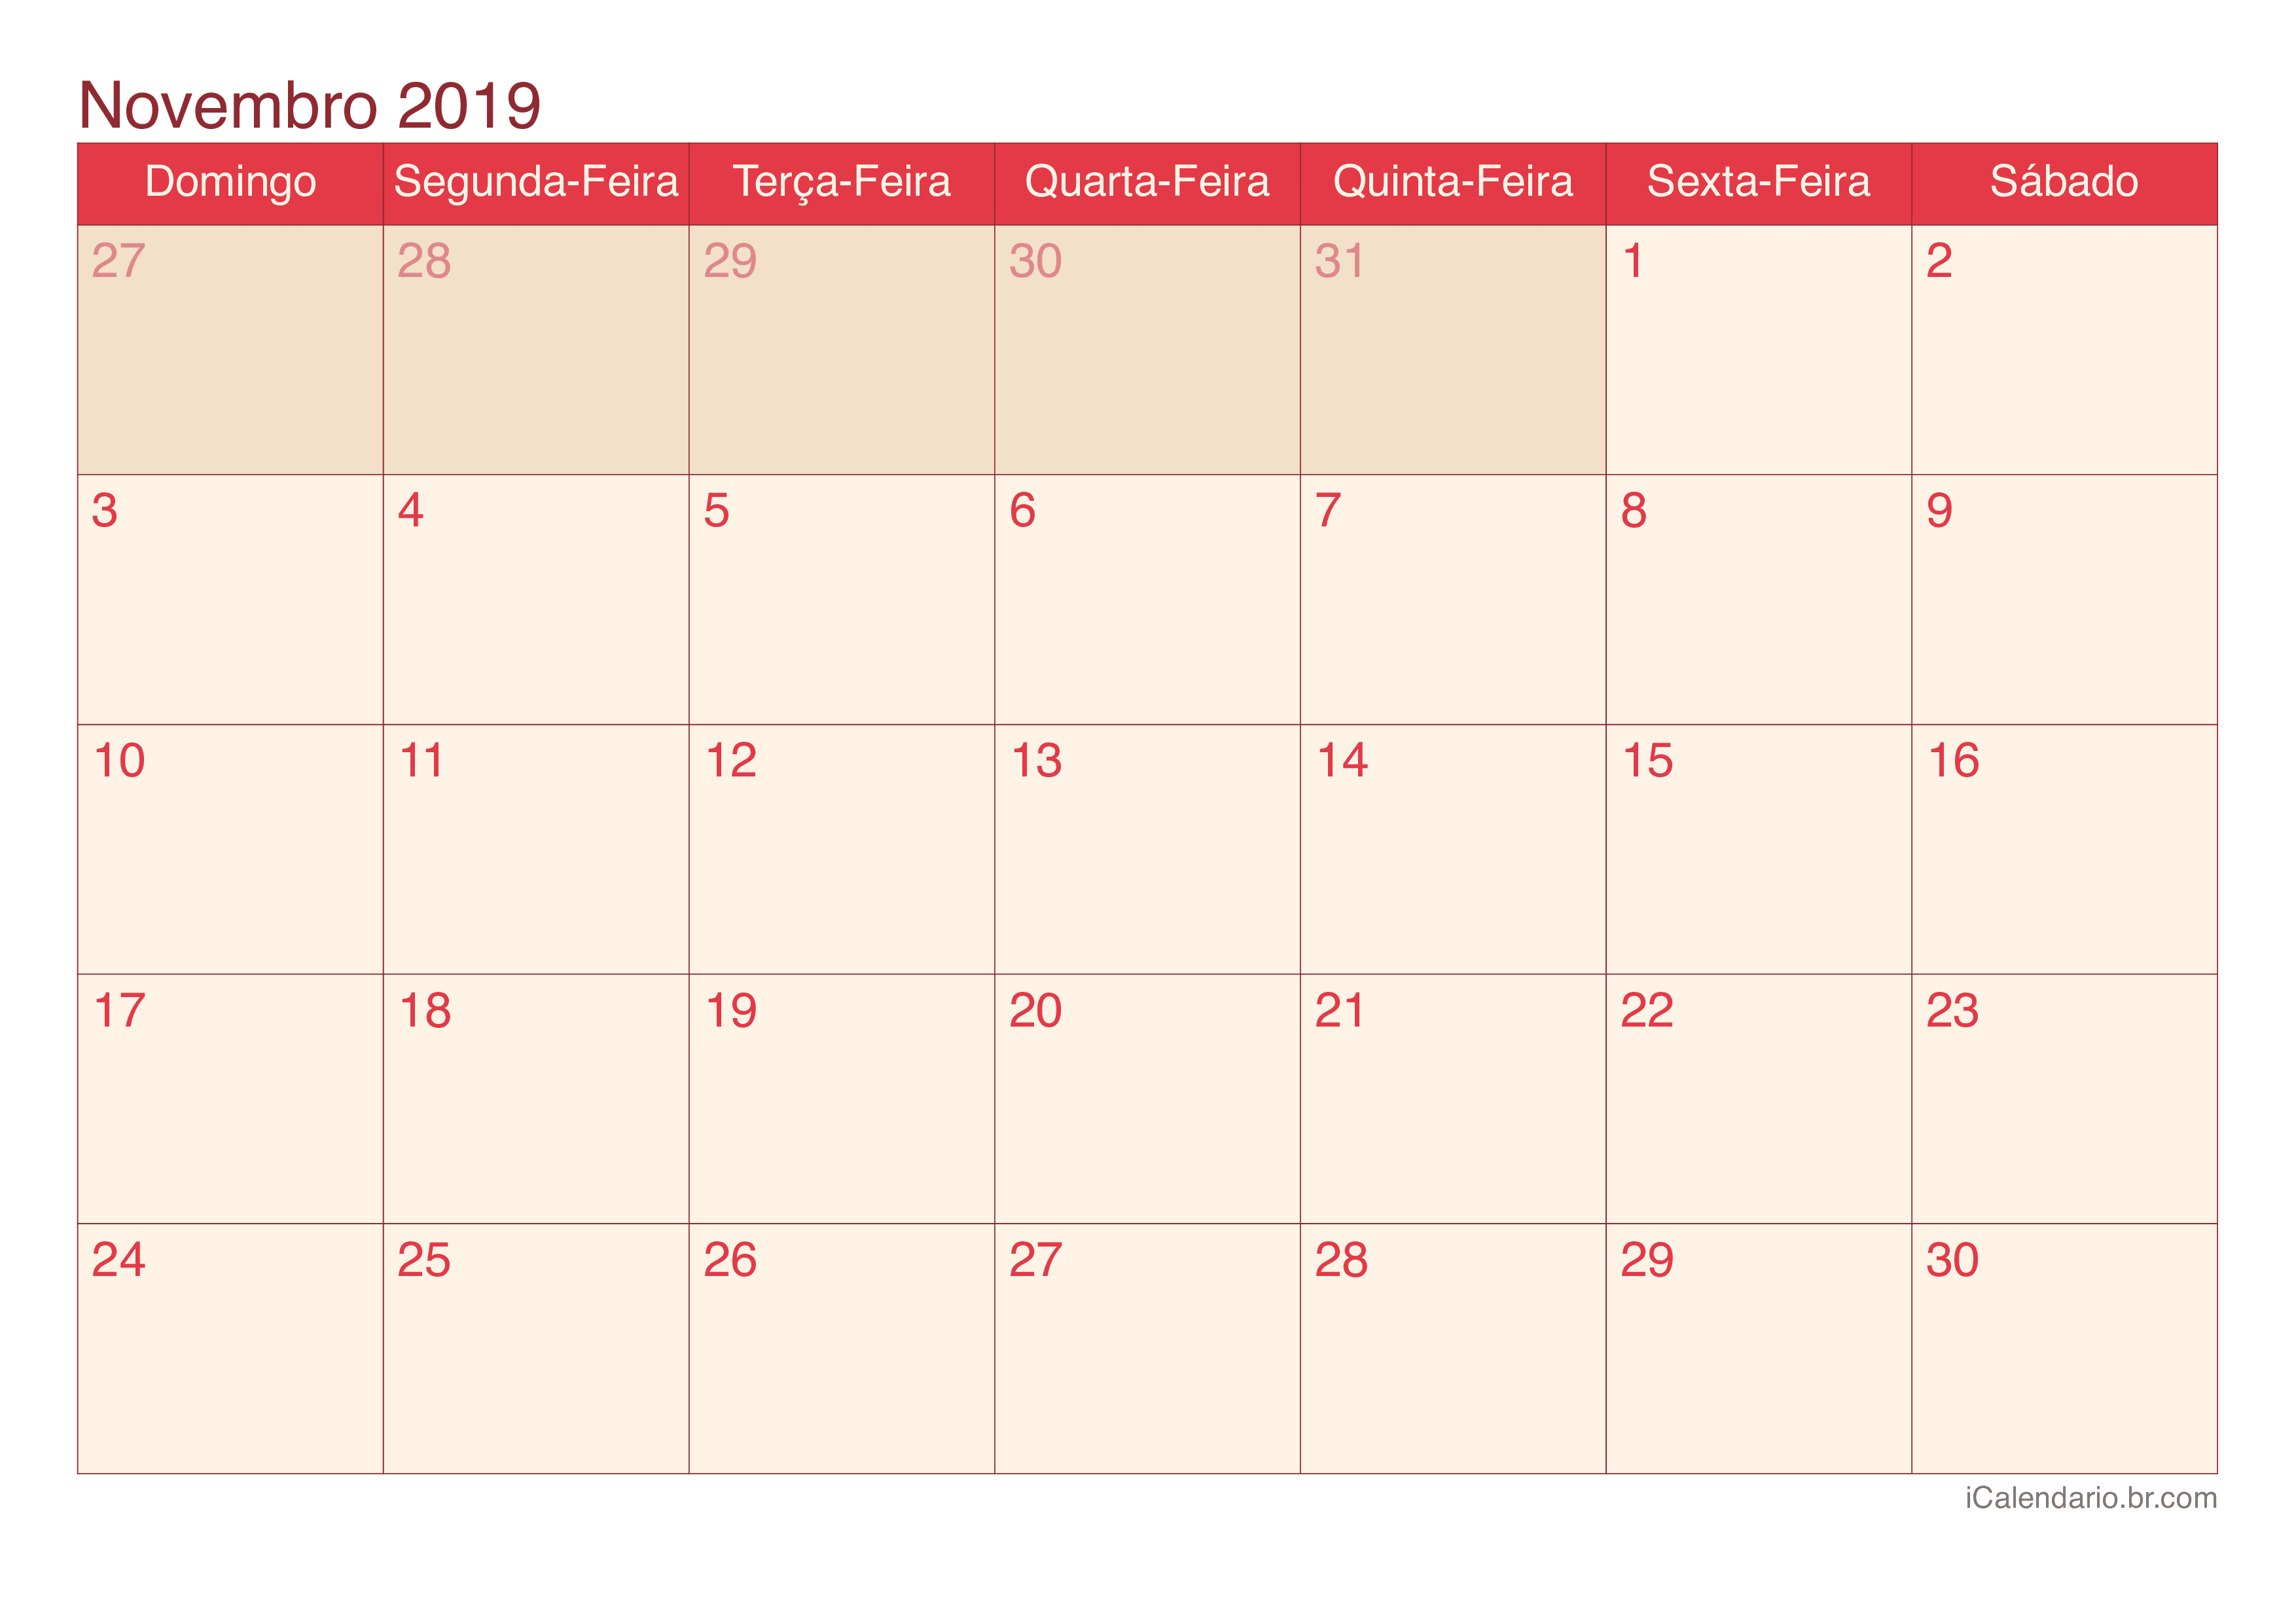 Calendário de novembro 2019 - Cherry